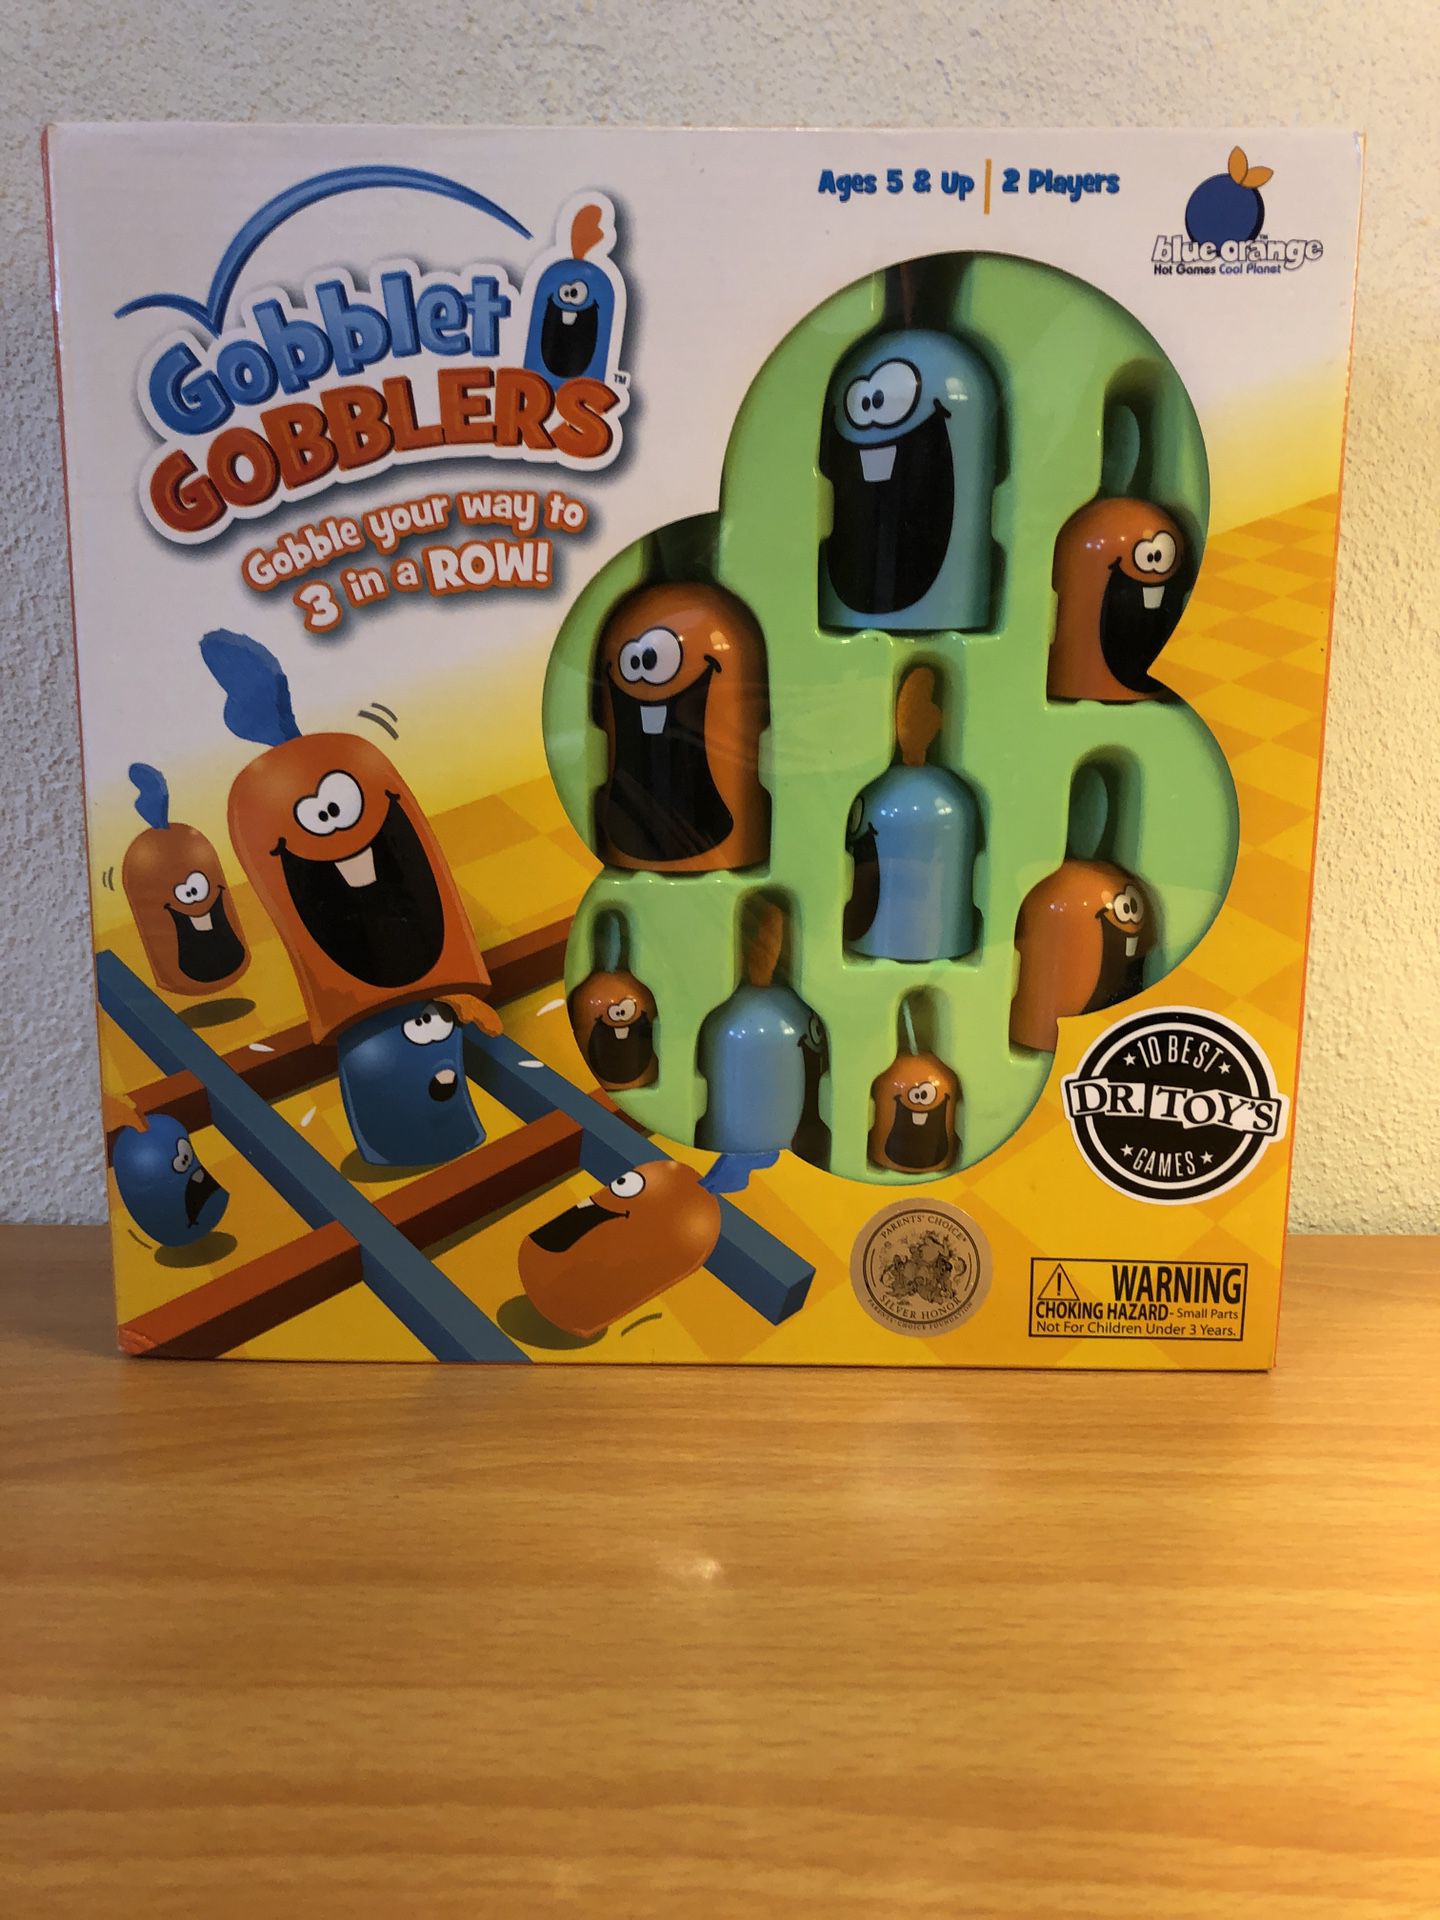 Gobblet Gobblers Board Game